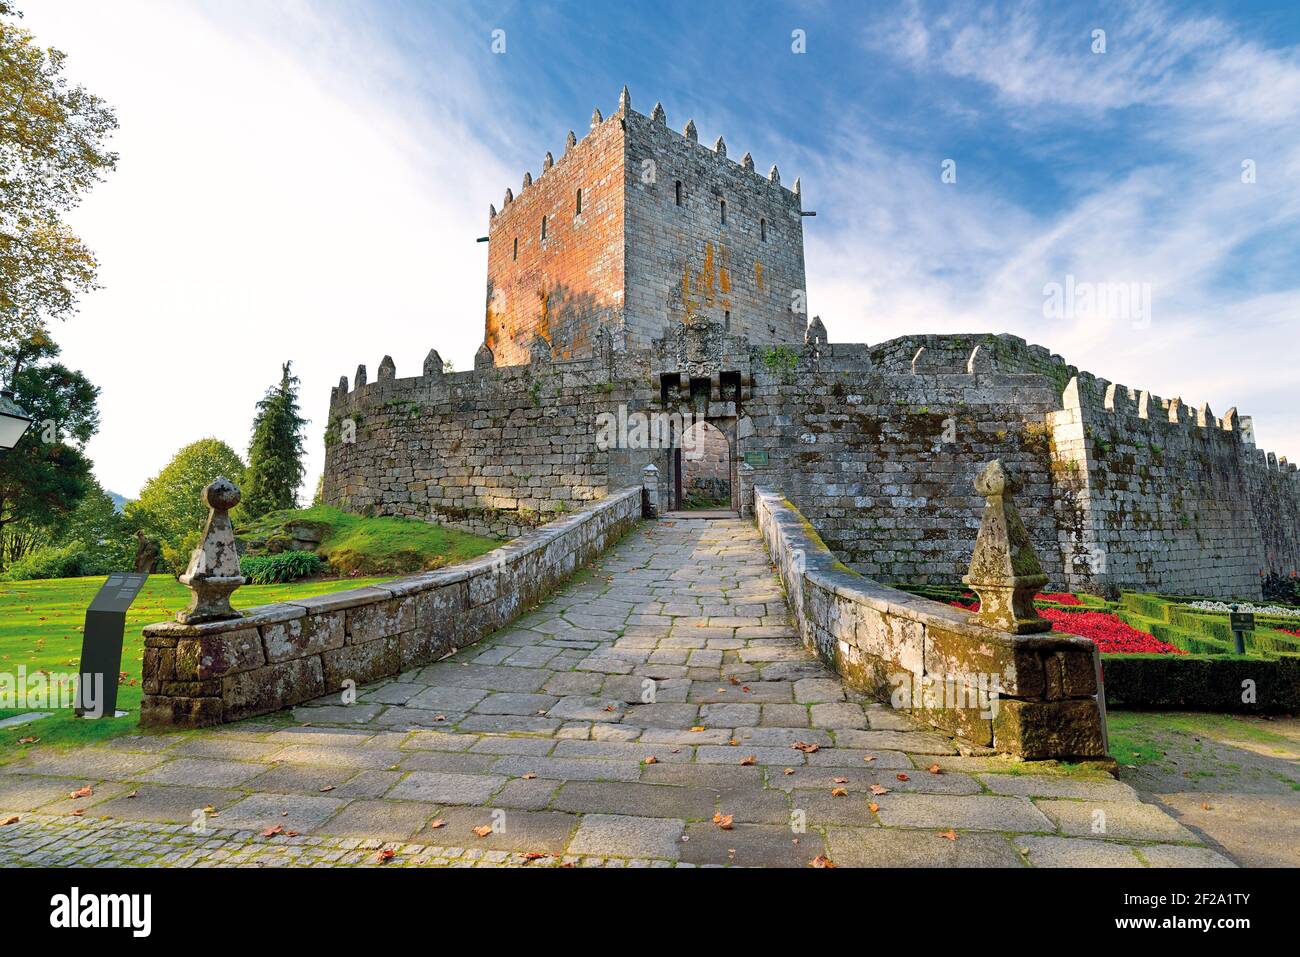 Haupteingang des beeindruckenden mittelalterlichen Schlosses mit Turm und Gärten In der Nähe Stockfoto